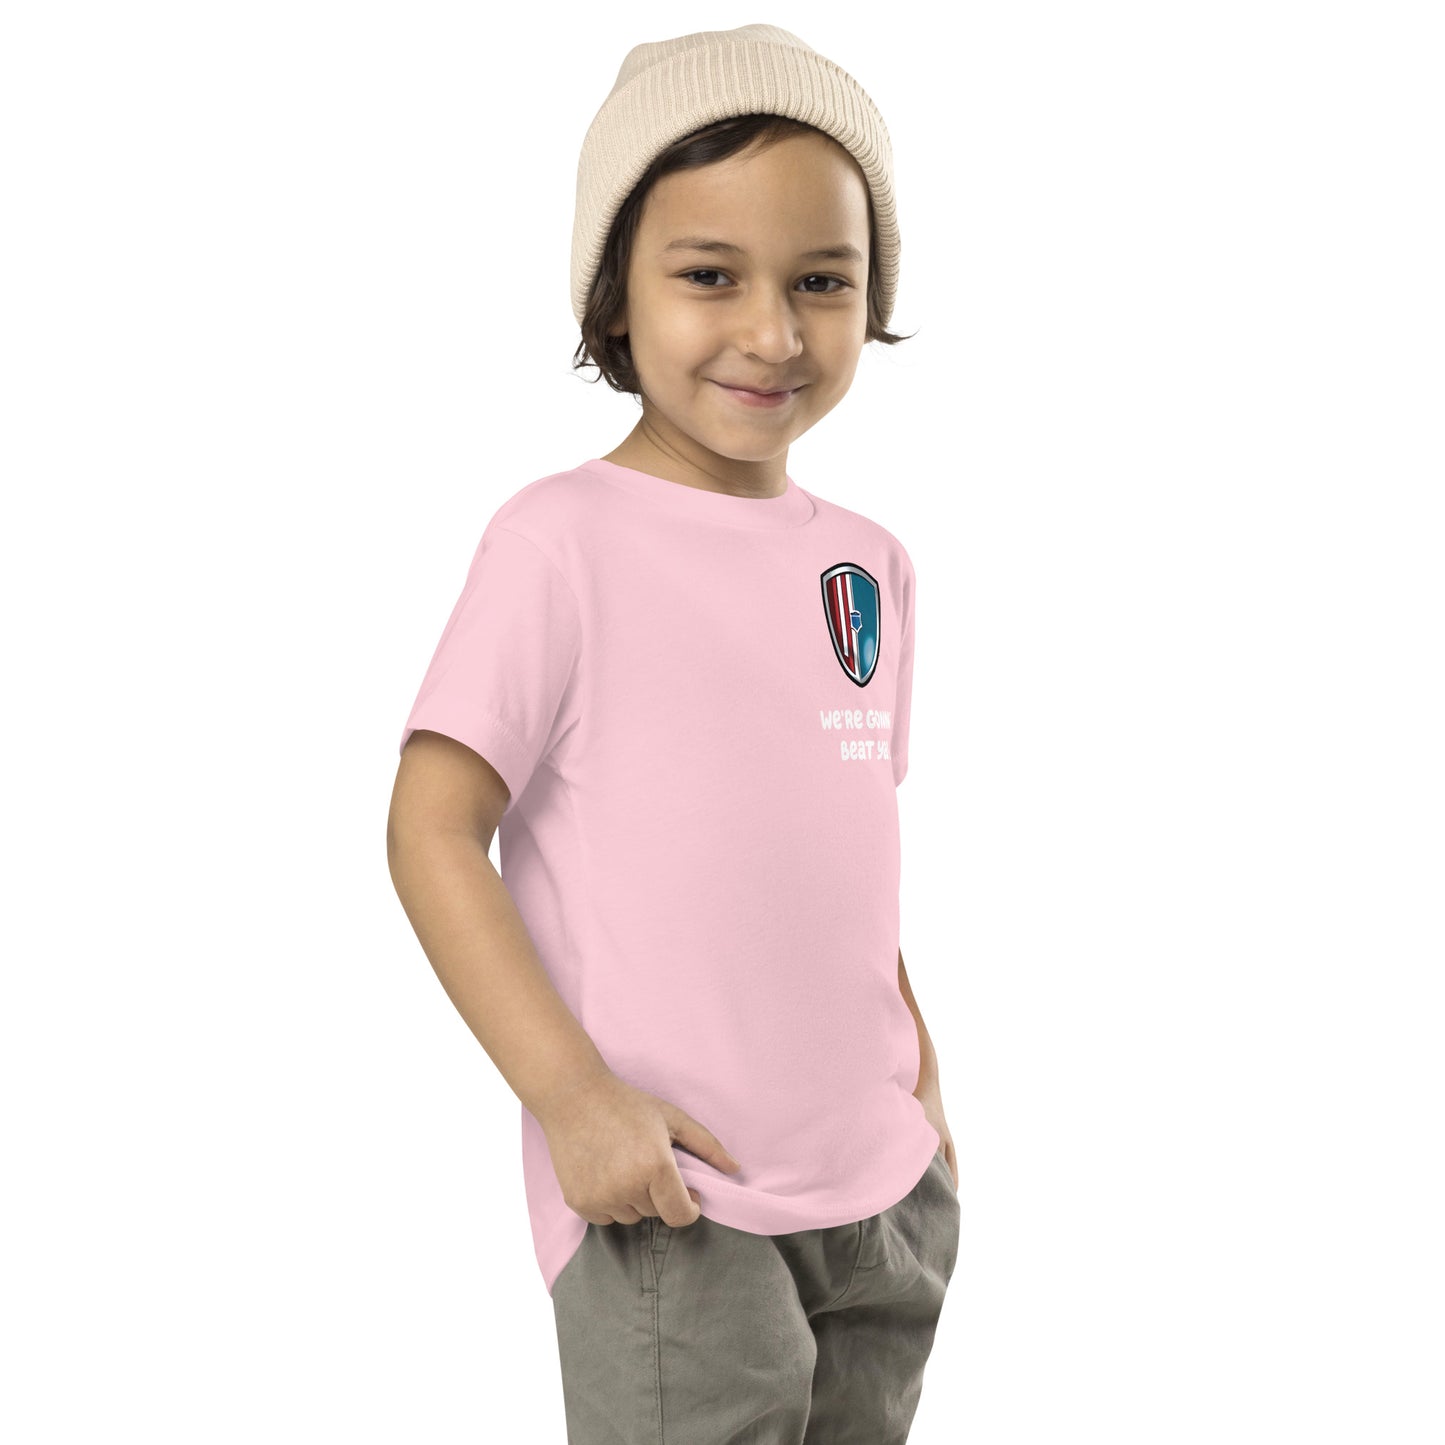 boy smirking while wearing Bluey Team Dad pink shirt